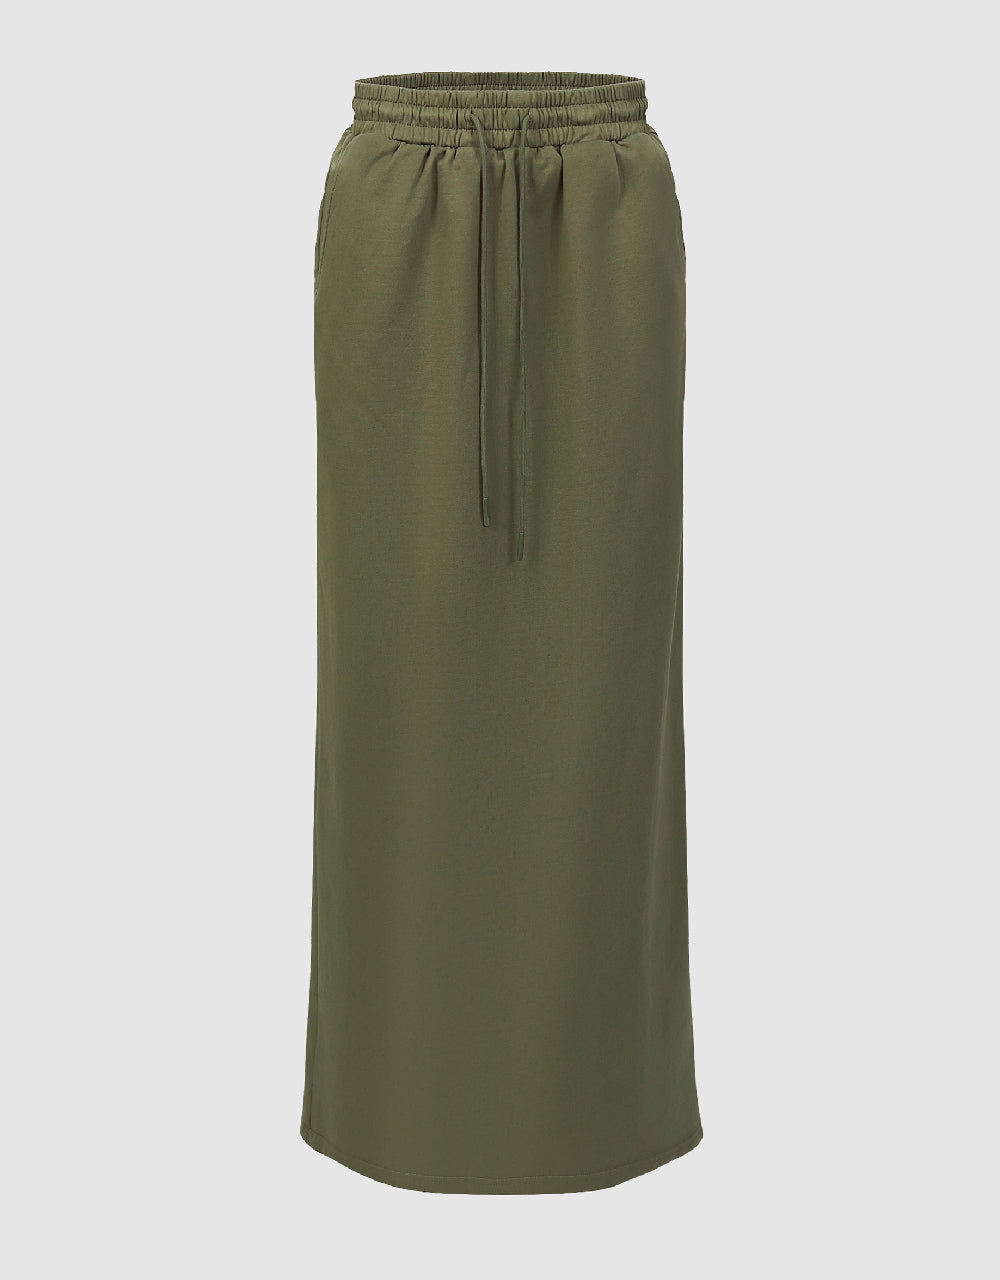 Drawstring Waist A-Line Skirt